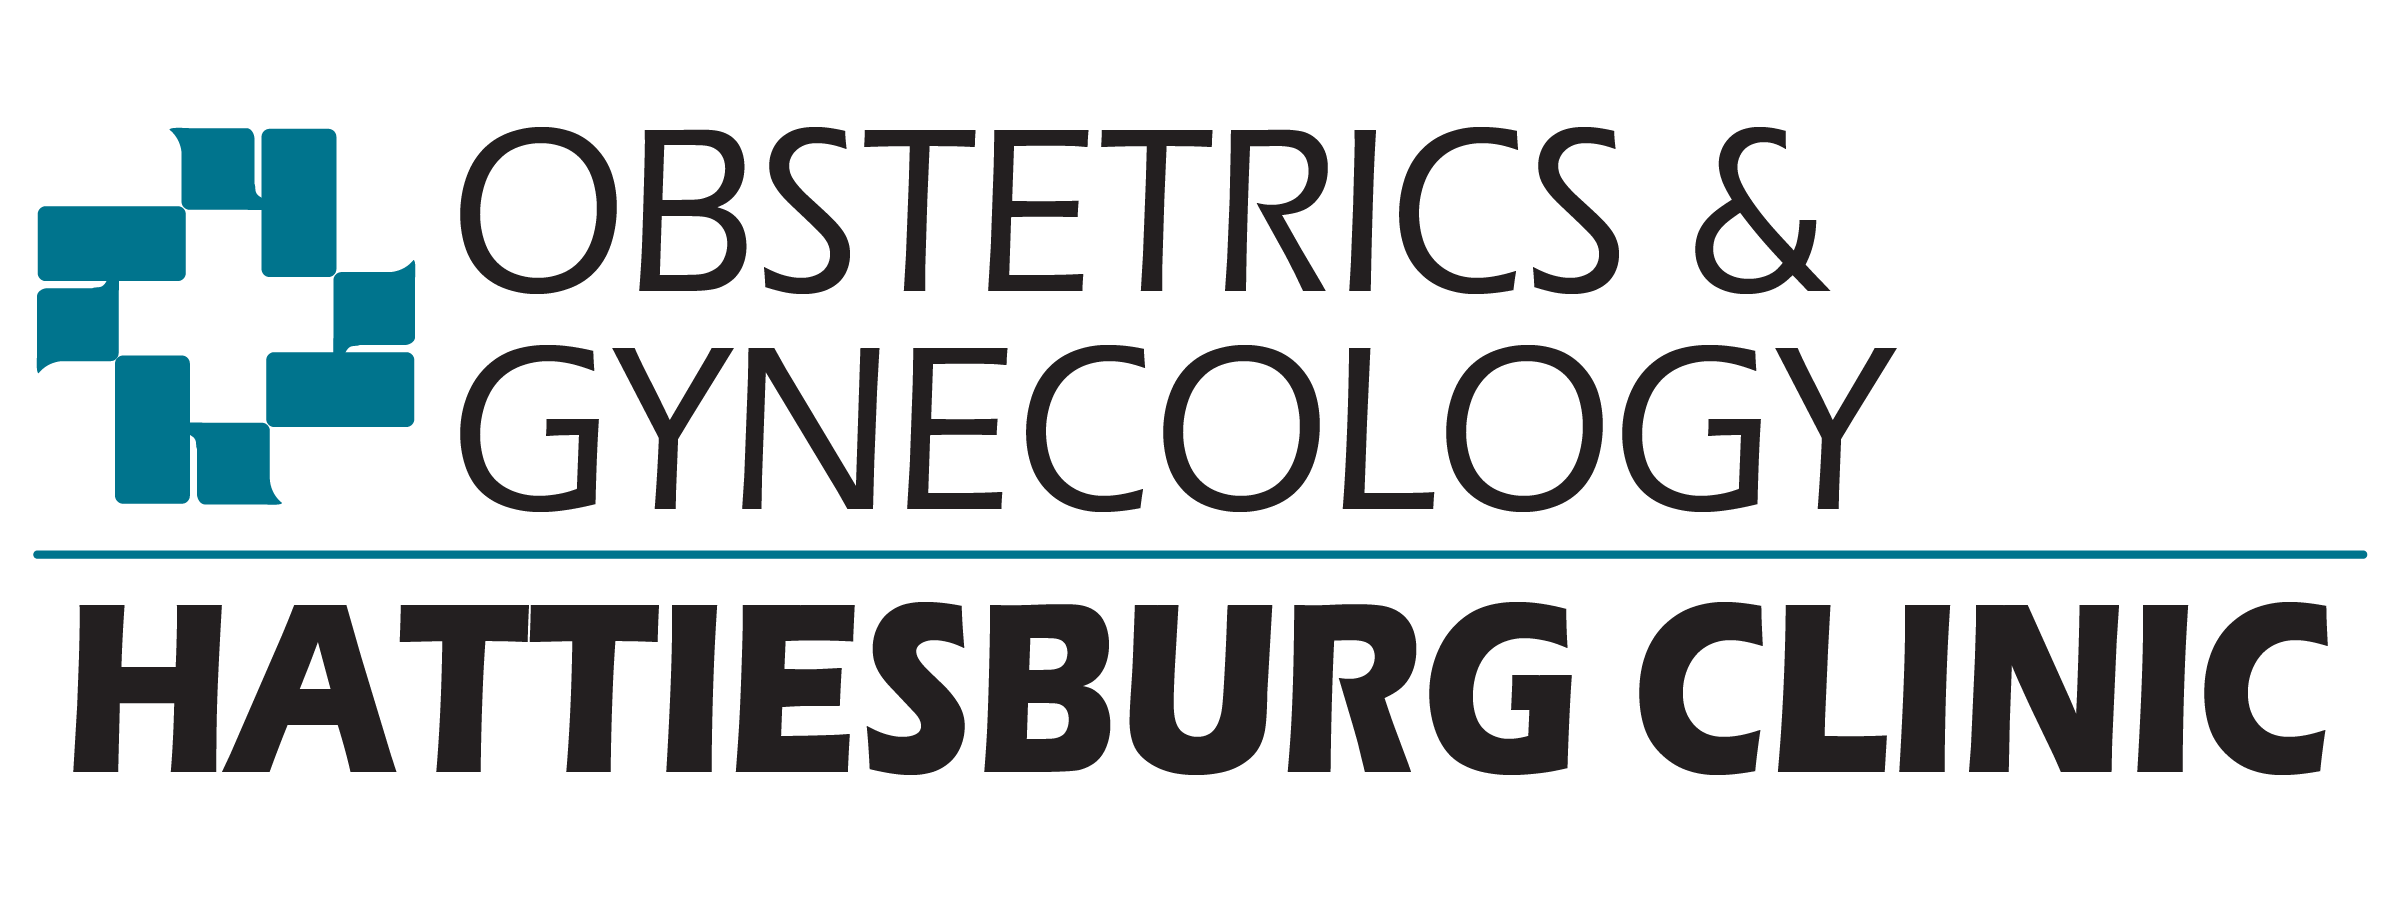 Obstetrics & Gynecology logo